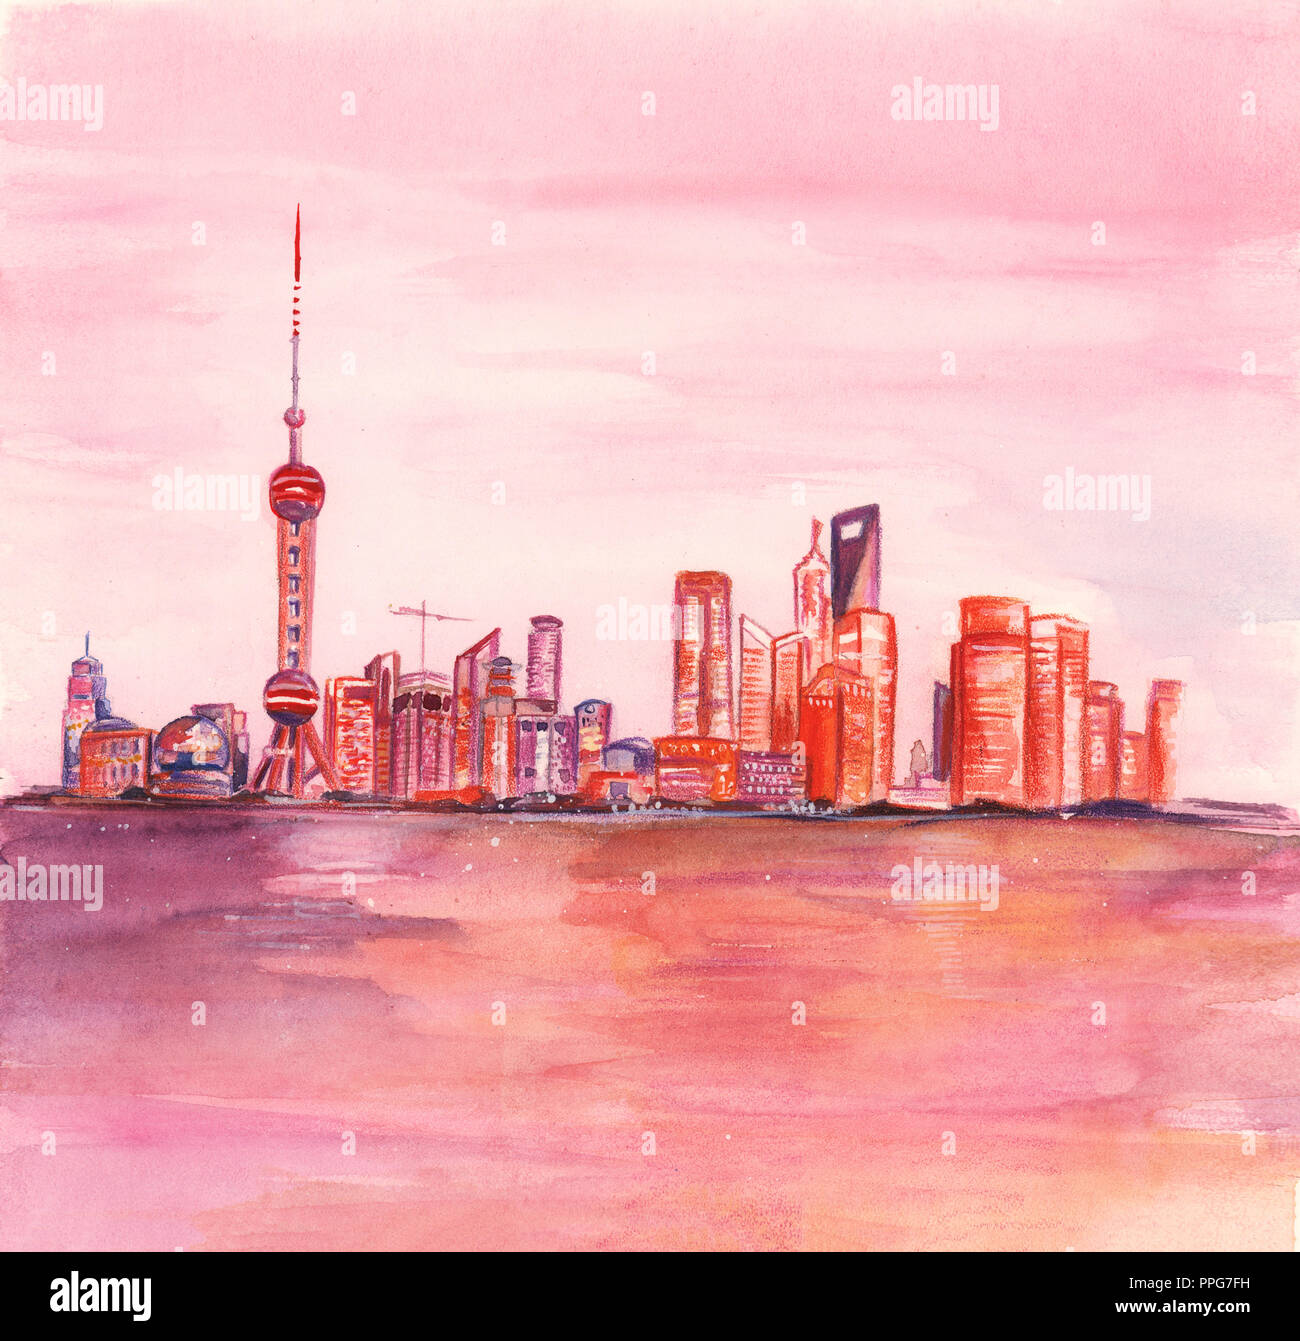 Illustration du dessin avec les peintures à l'aquarelle de ligne d'horizon gratte-ciel de la ville de Shanghai Chine Banque D'Images